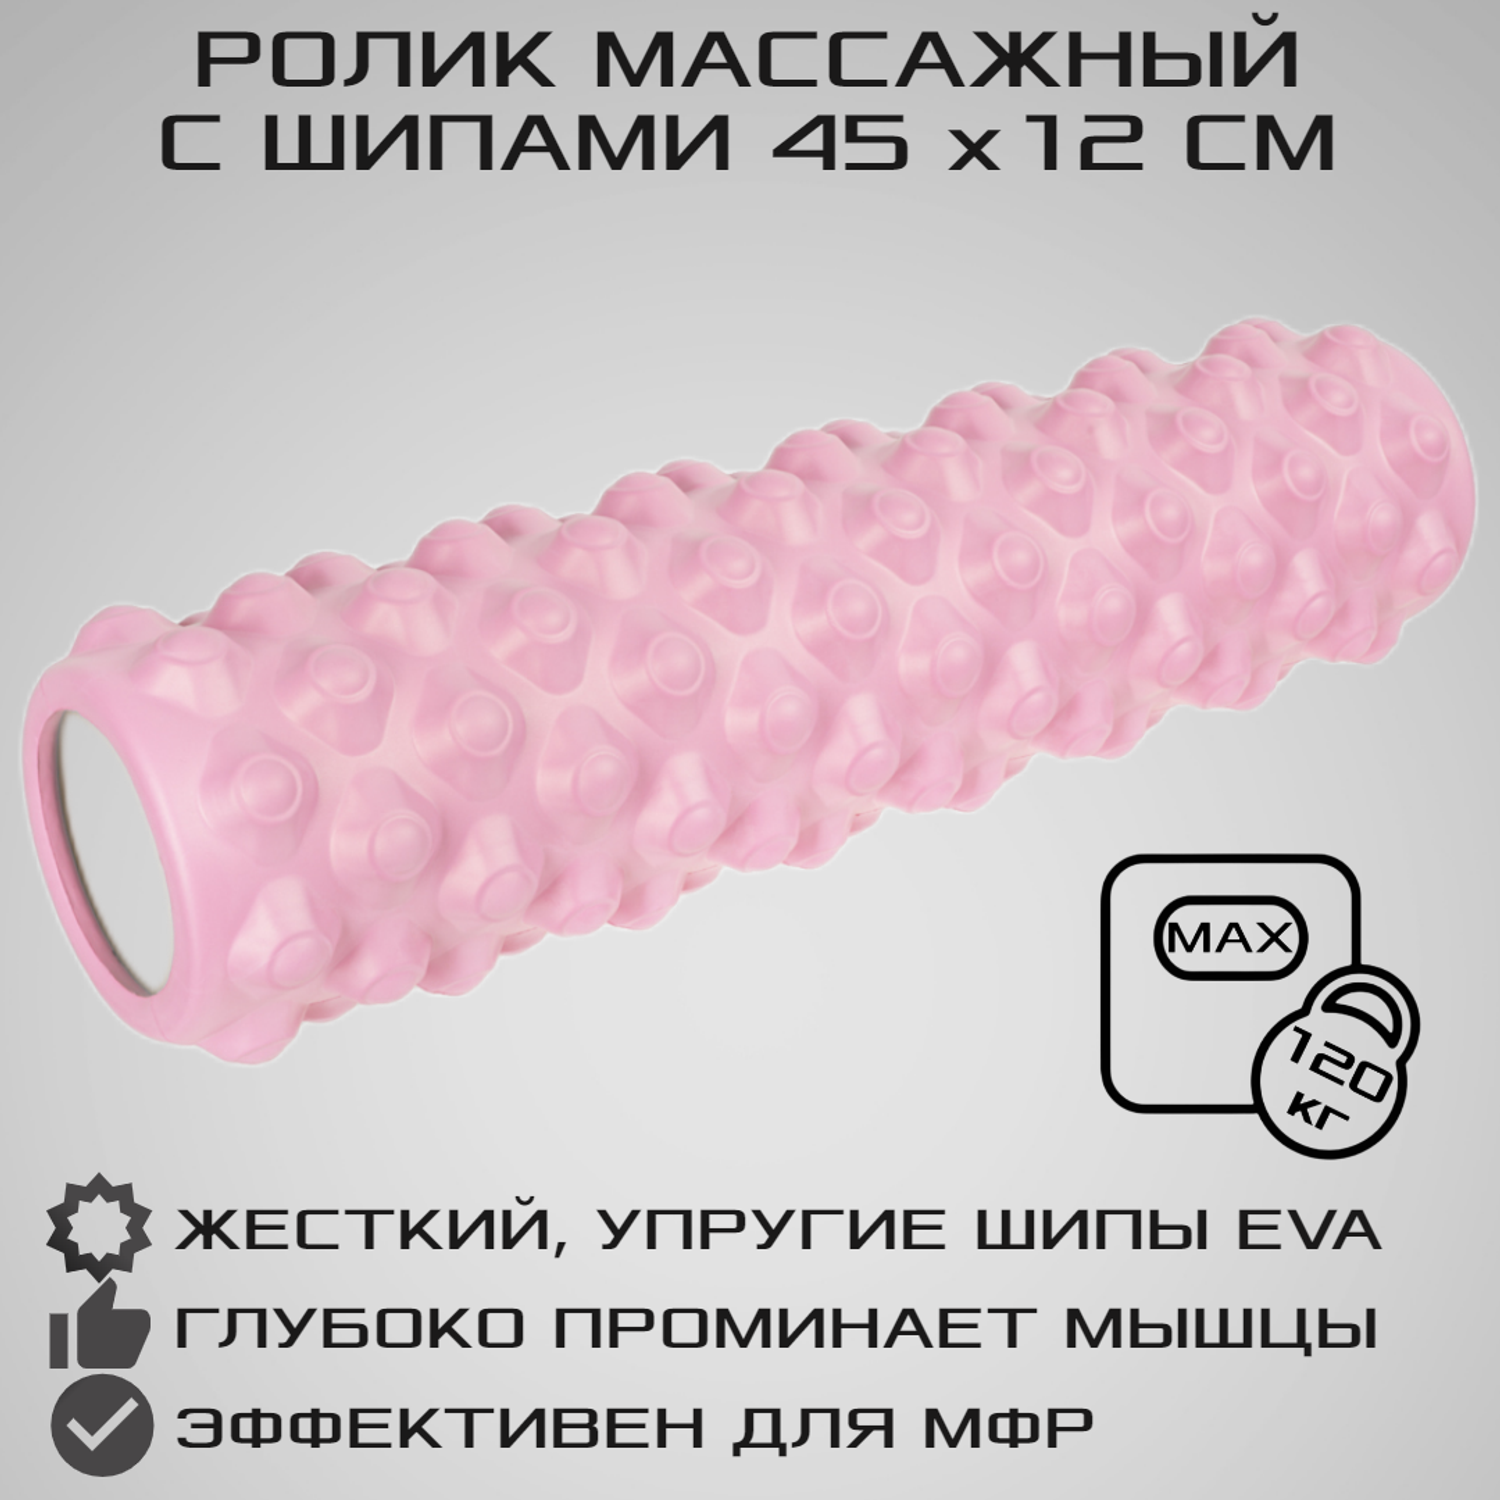 Ролик массажный STRONG BODY с шипами спортивный для фитнеса МФР йоги и пилатес 45 см х 12 см розовый - фото 1